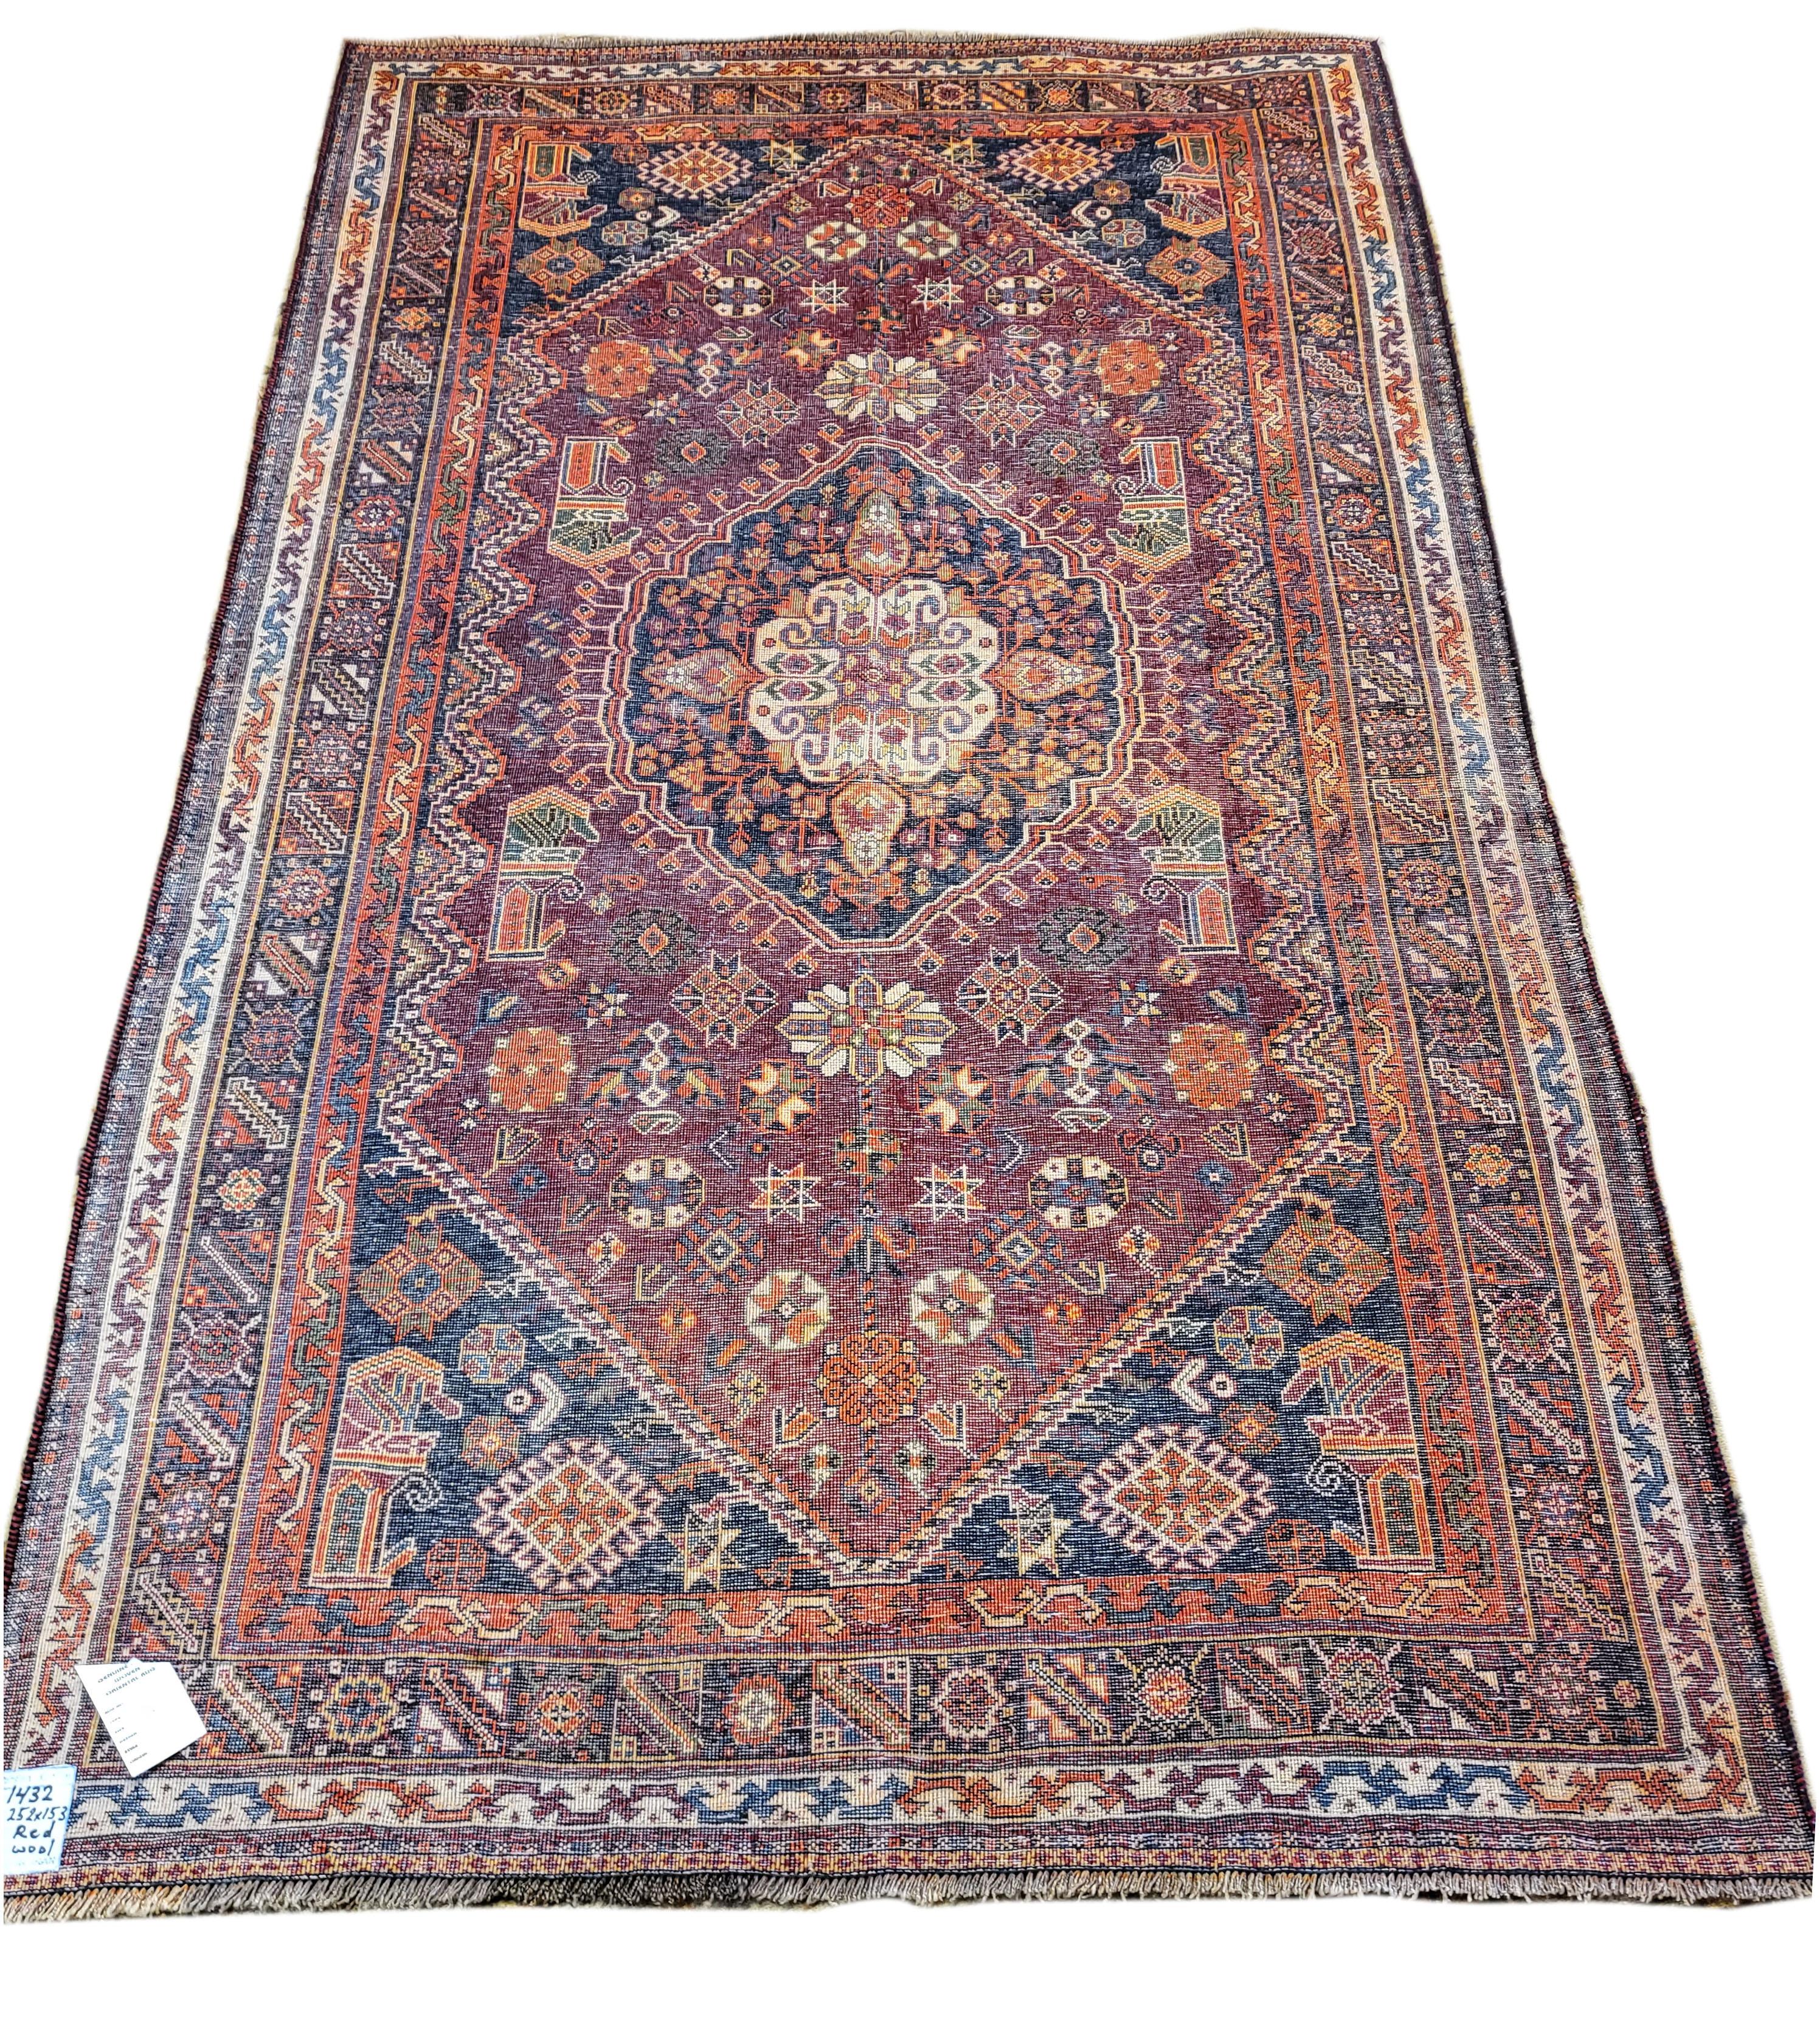 5'x8.5' Antique Qashqai - Nomadic / Tribal Persian Rug  In Excellent Condition For Sale In Blacksburg, VA